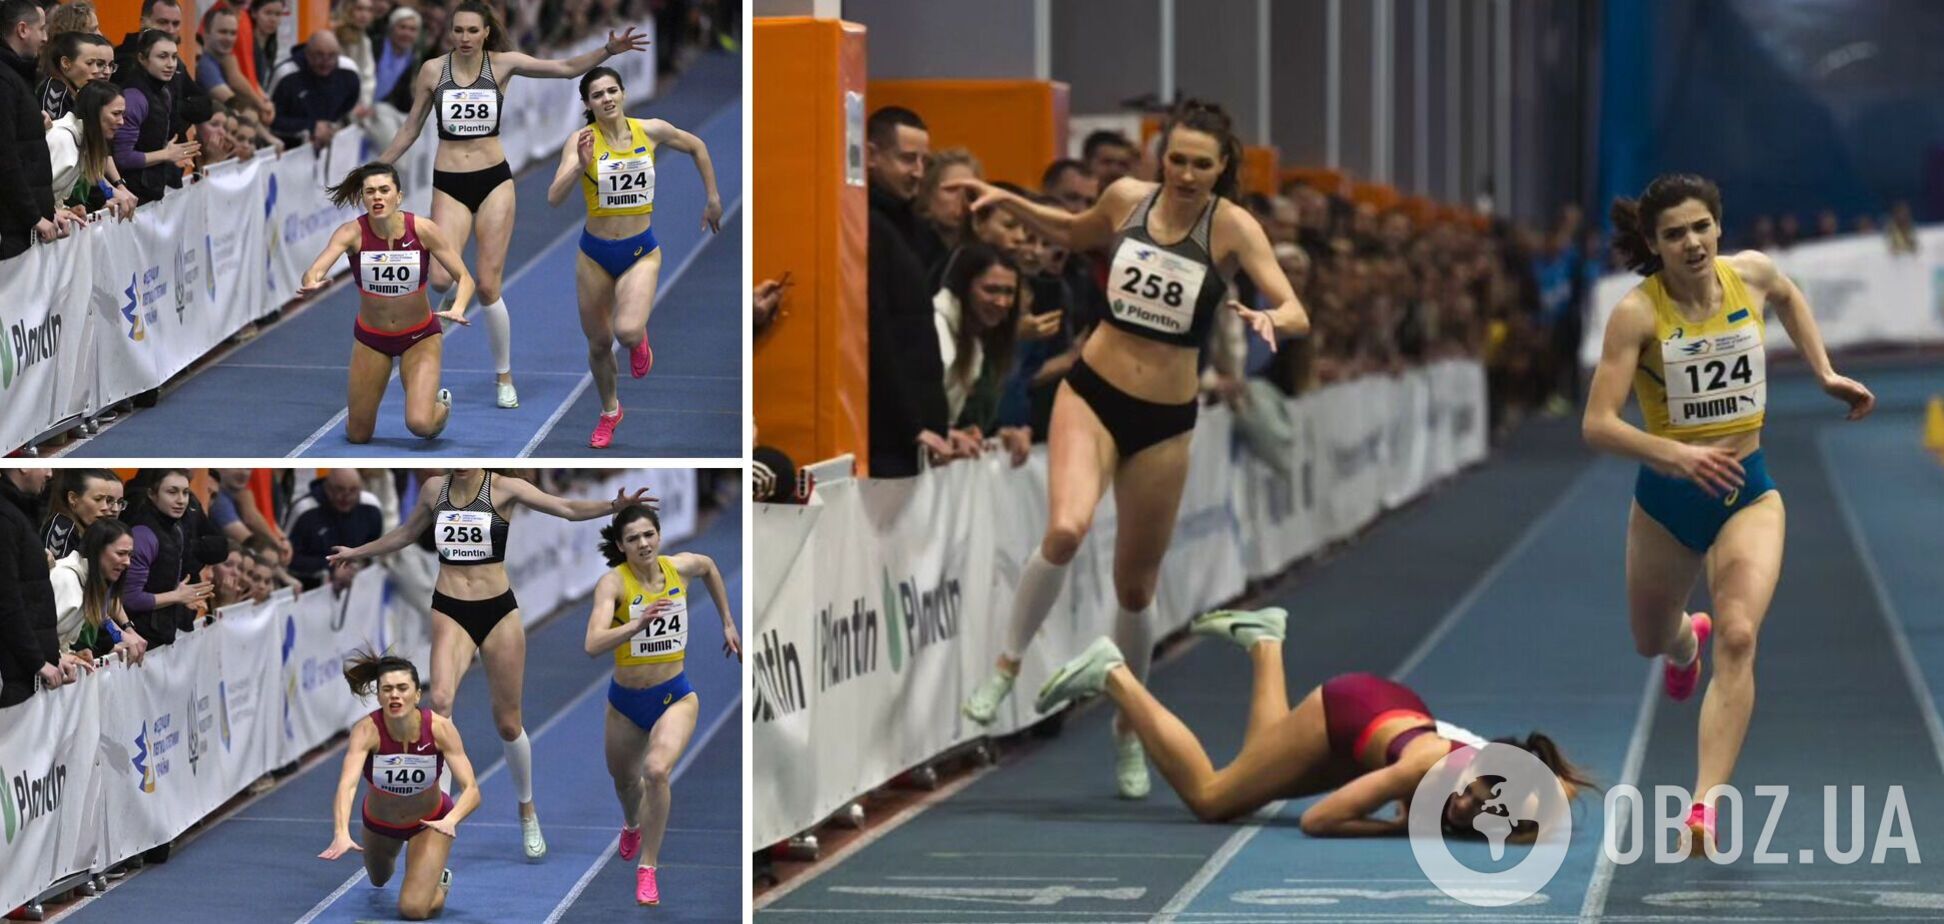 Чемпионка Украины по легкой атлетике за метр до финиша упала лицом в пол, лишив себя победы. Видео